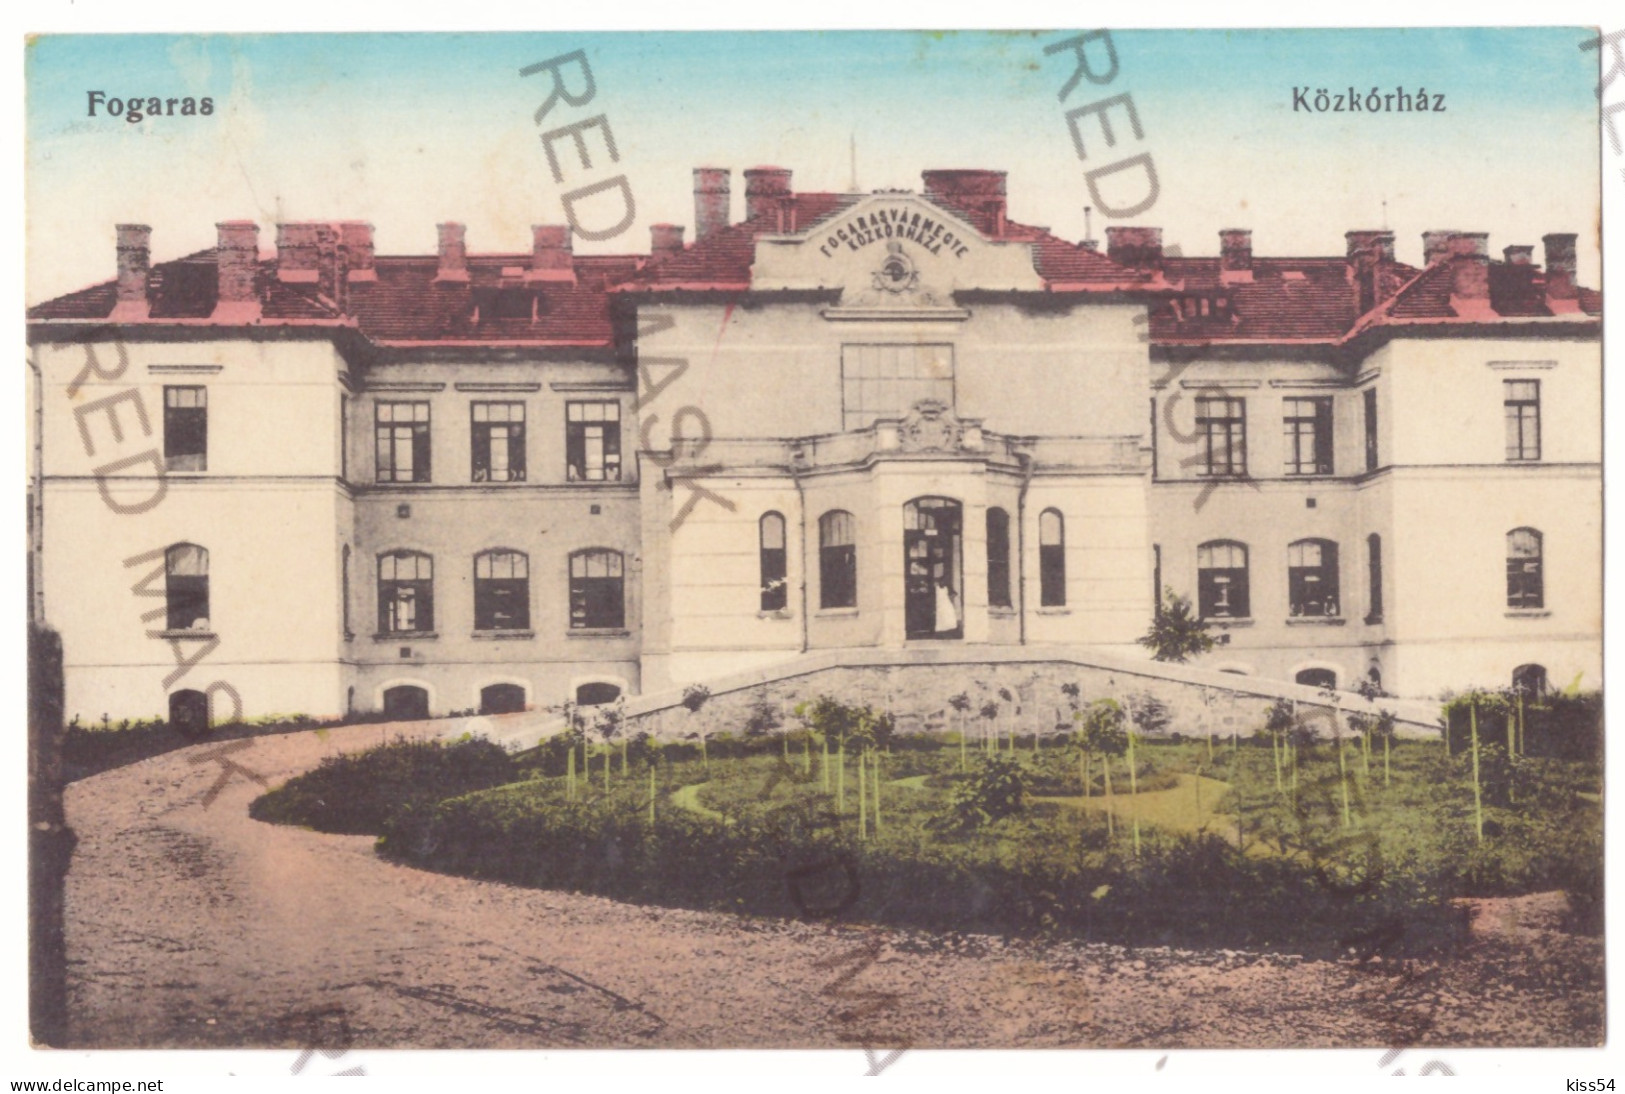 RO 05 - 20706 FAGARAS, Hospital, Romania - Old Postcard - Used - 1915 - Roumanie